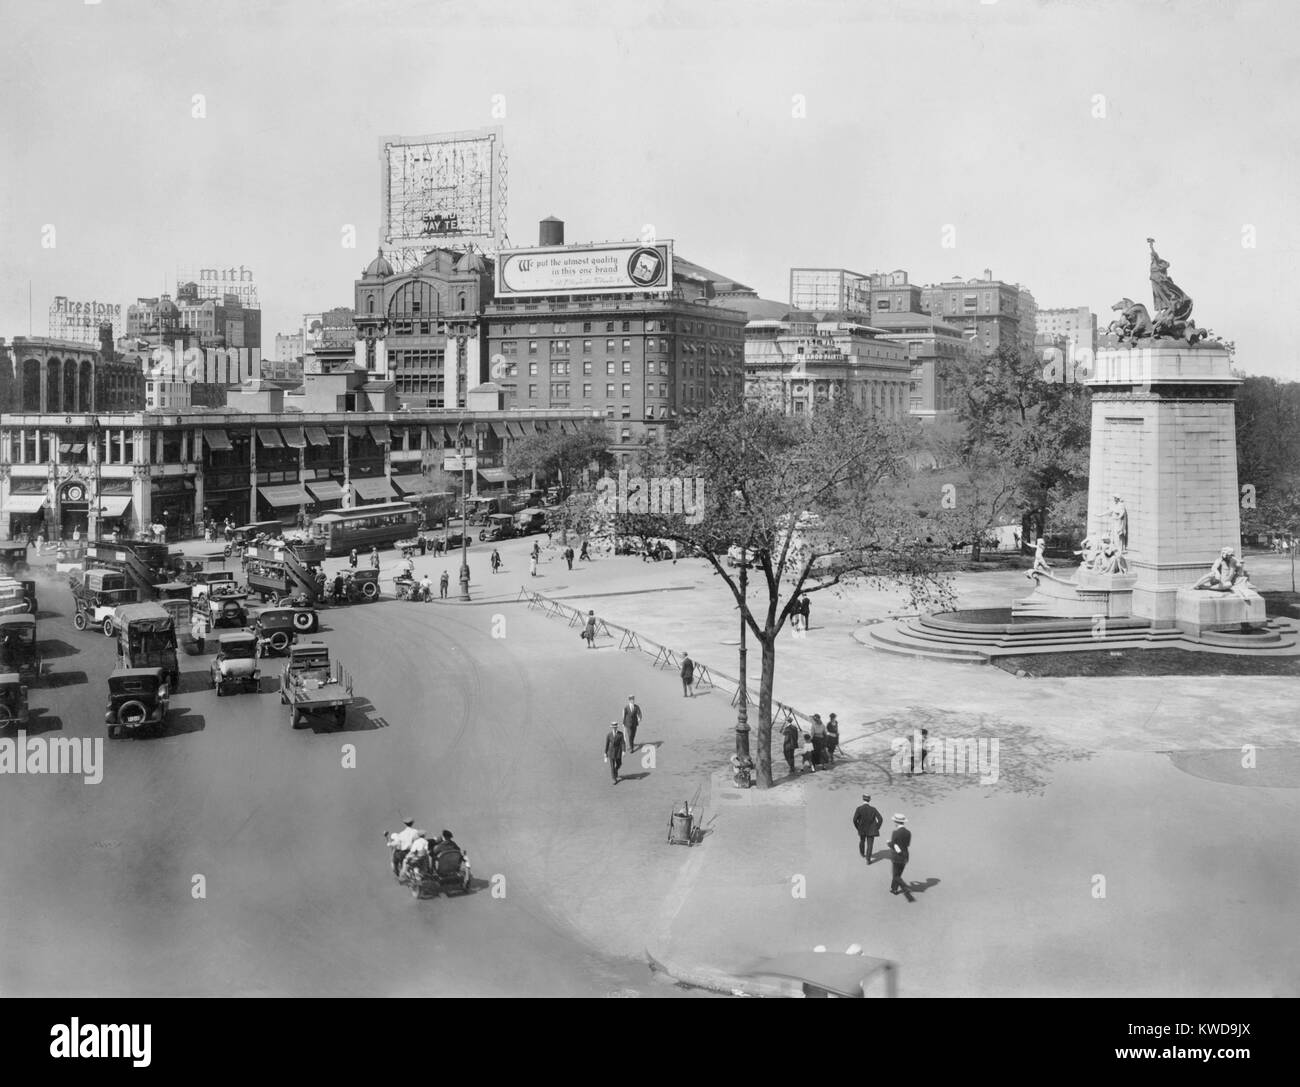 New York City's Columbus Circle à l'intersection de Broadway, 8e Avenue, et la 59e Rue. En 1921 Trollies, double decker bus, voitures, camions, chevaux et vendeurs pushcart shard la rue sur le coin sud-ouest de Central Park (BSLOC___2016 10 202) Banque D'Images